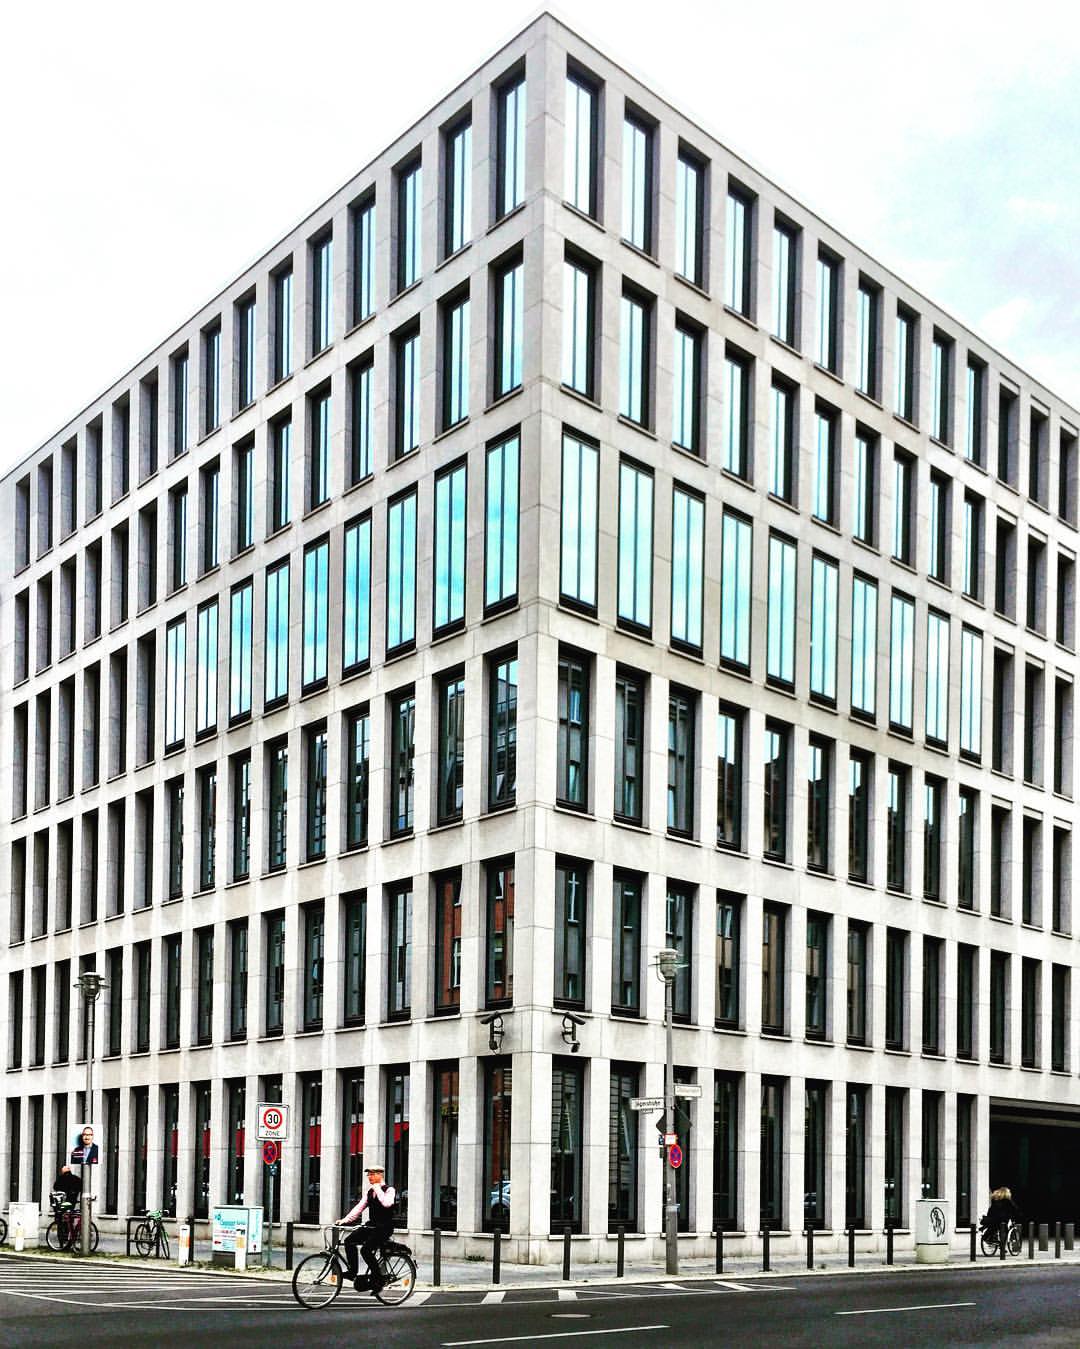 7. Adoro paisagens simétricas! E você? #paracegover A imagem mostra um prédio de concreto e vidro visto de esquina, em perfeita simetria. No canto esquerdo, passa um ciclista ( Französische Straße).